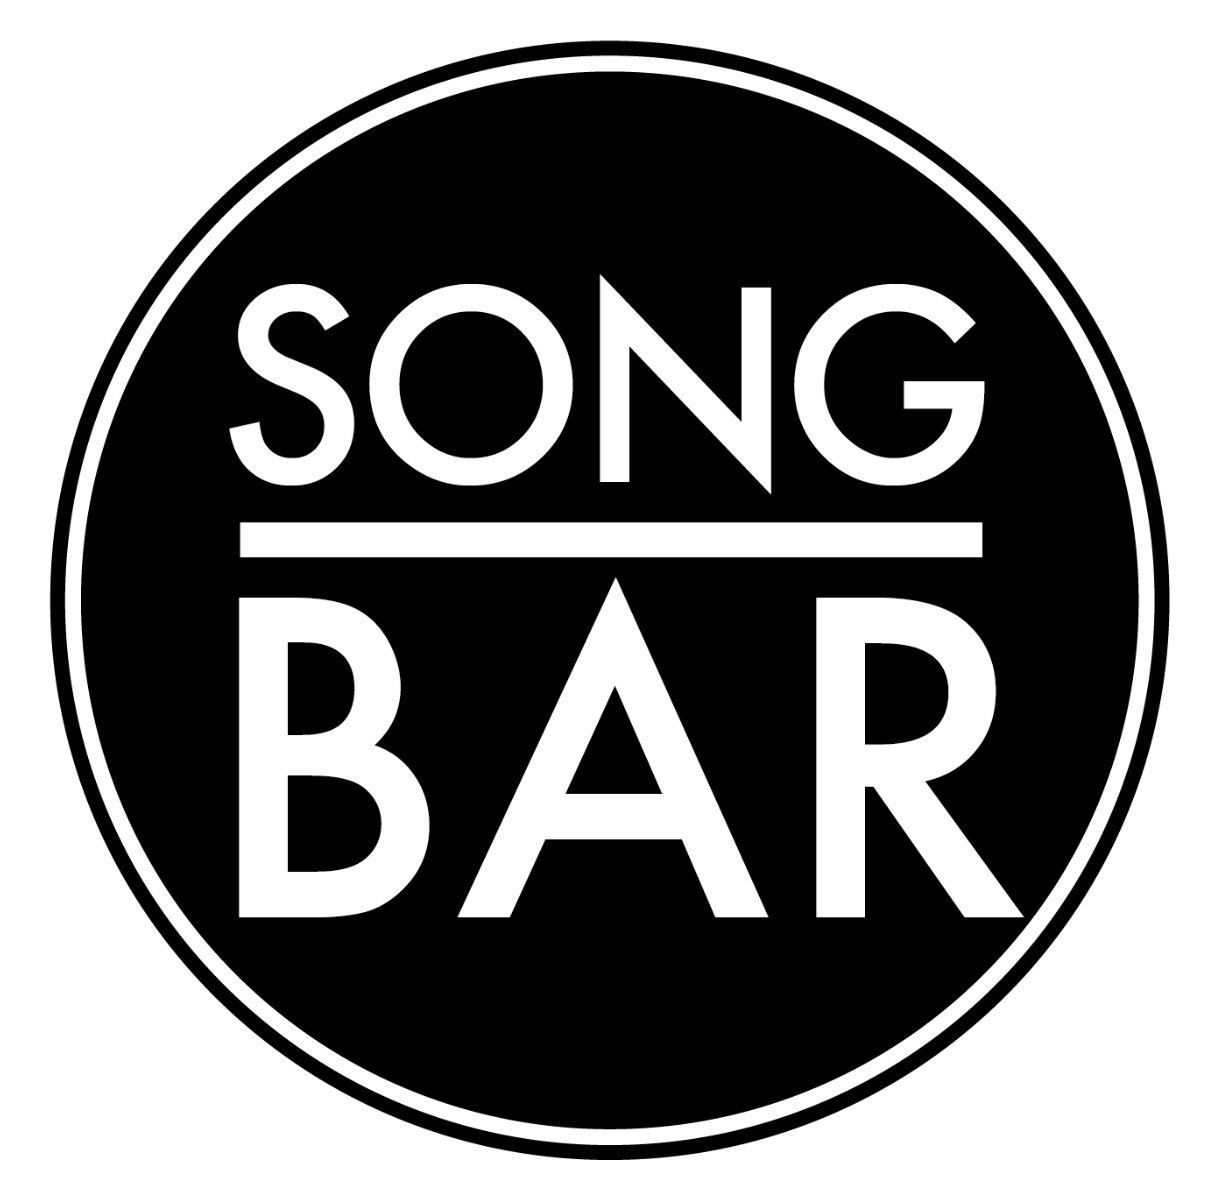 Song Bar logo